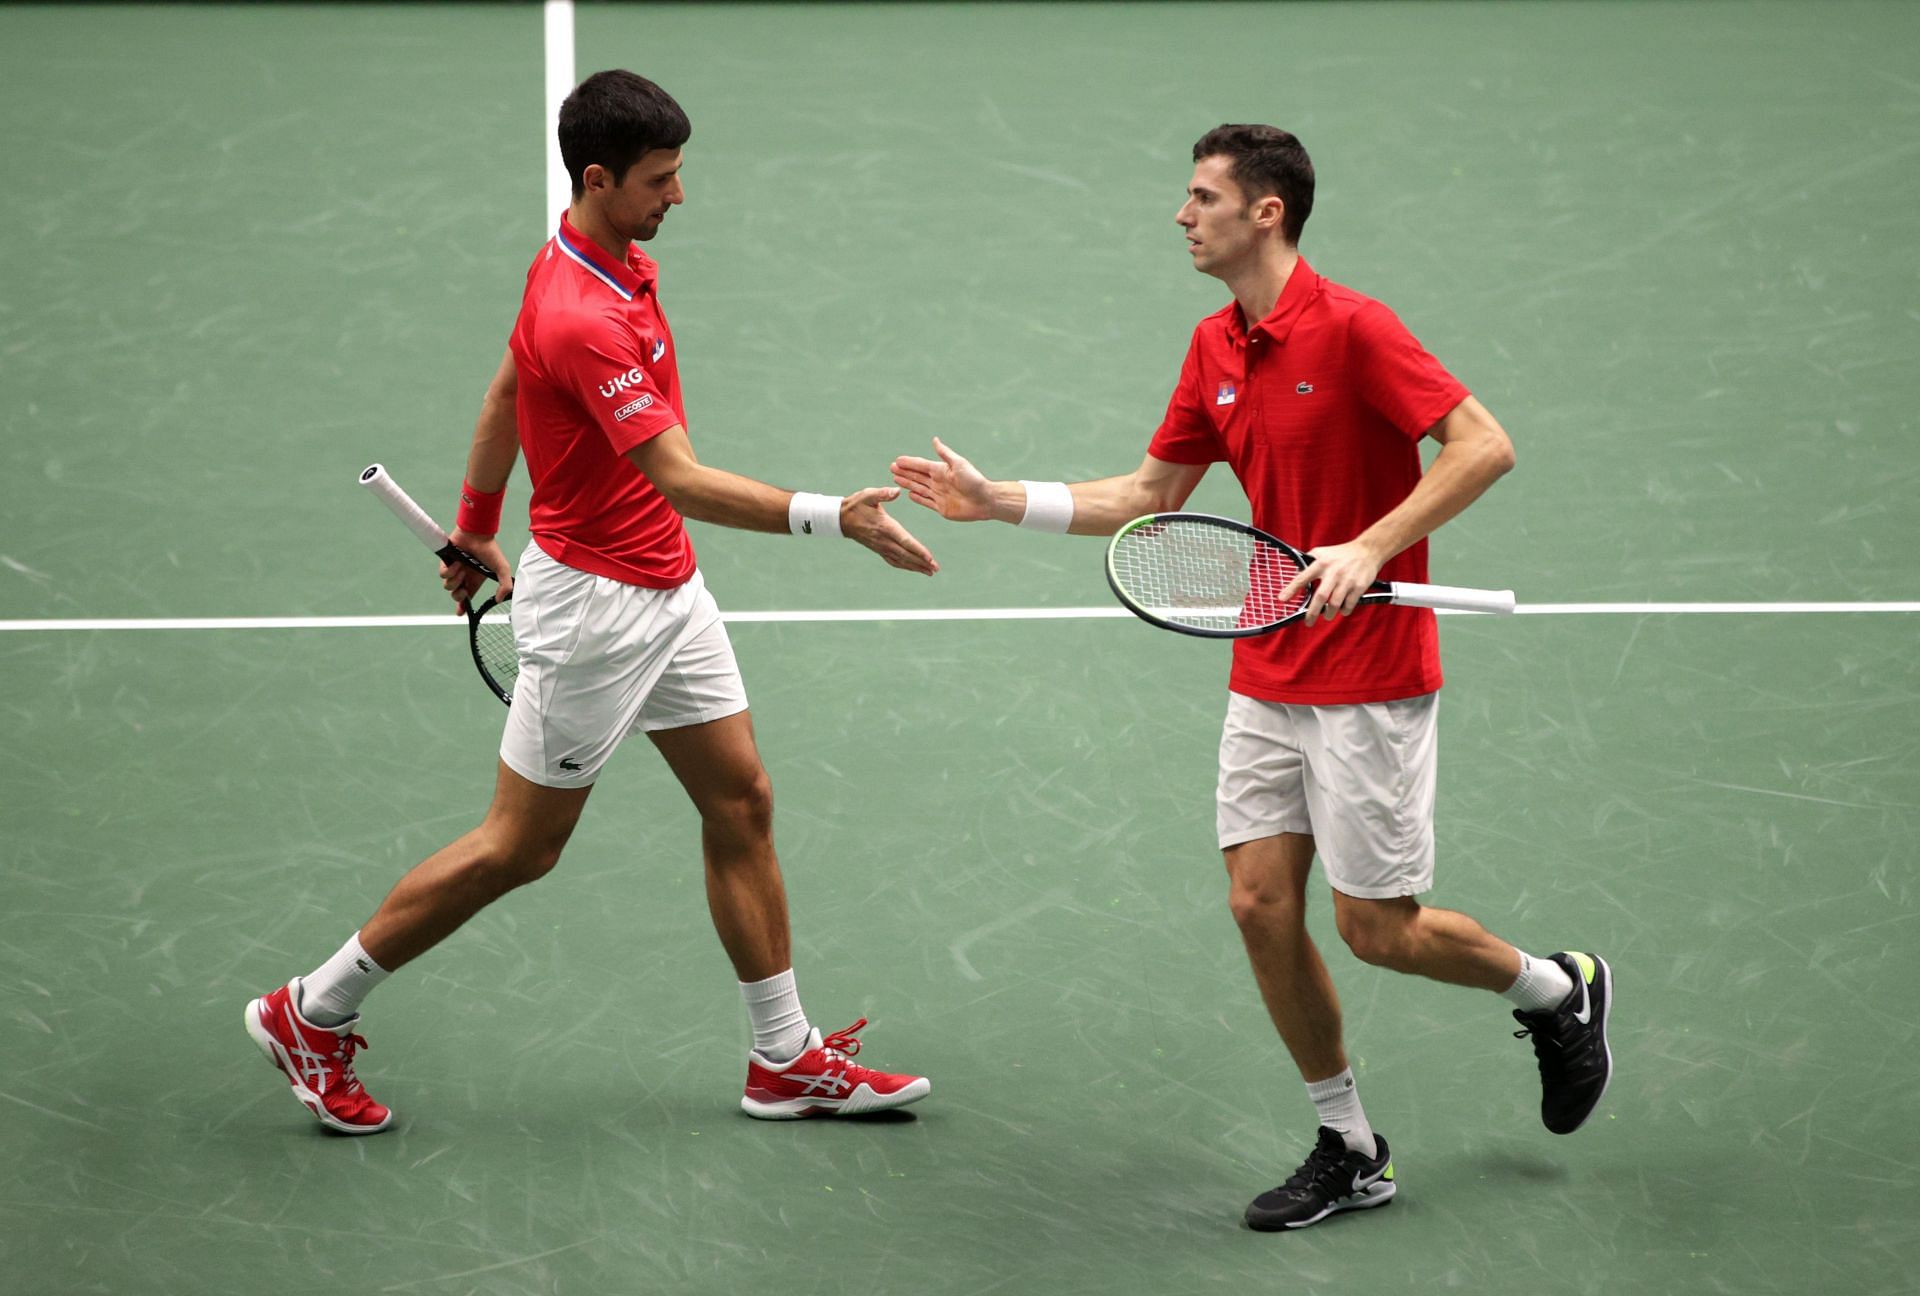 Novak Djokovic and Nikola Cacic at the 2021 Davis Cup.